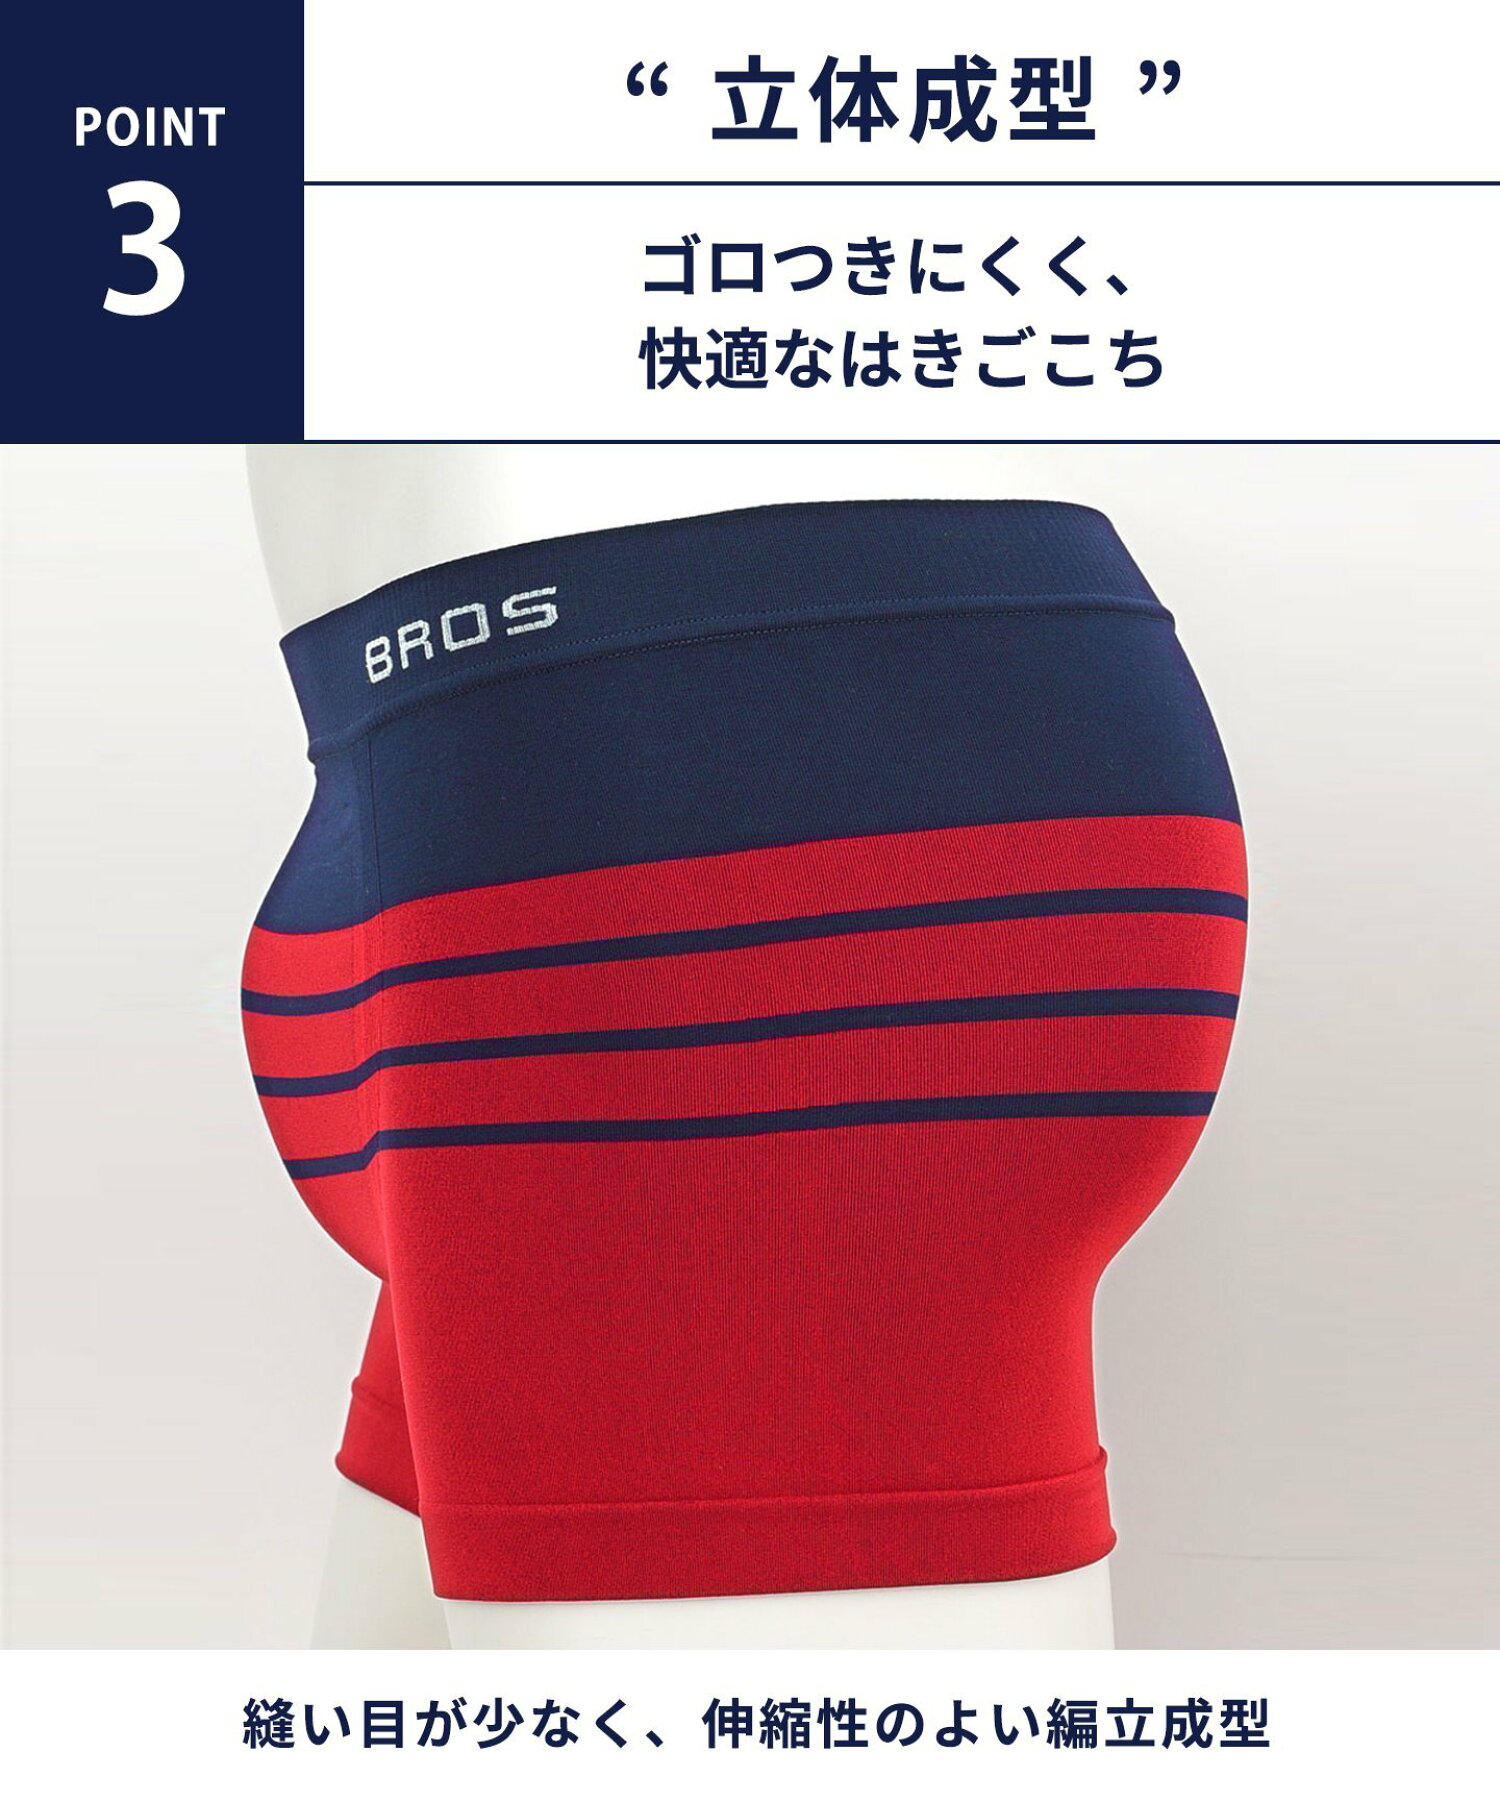 【福袋】 ブロス ボクサーパンツ パンツホリック 3枚セット